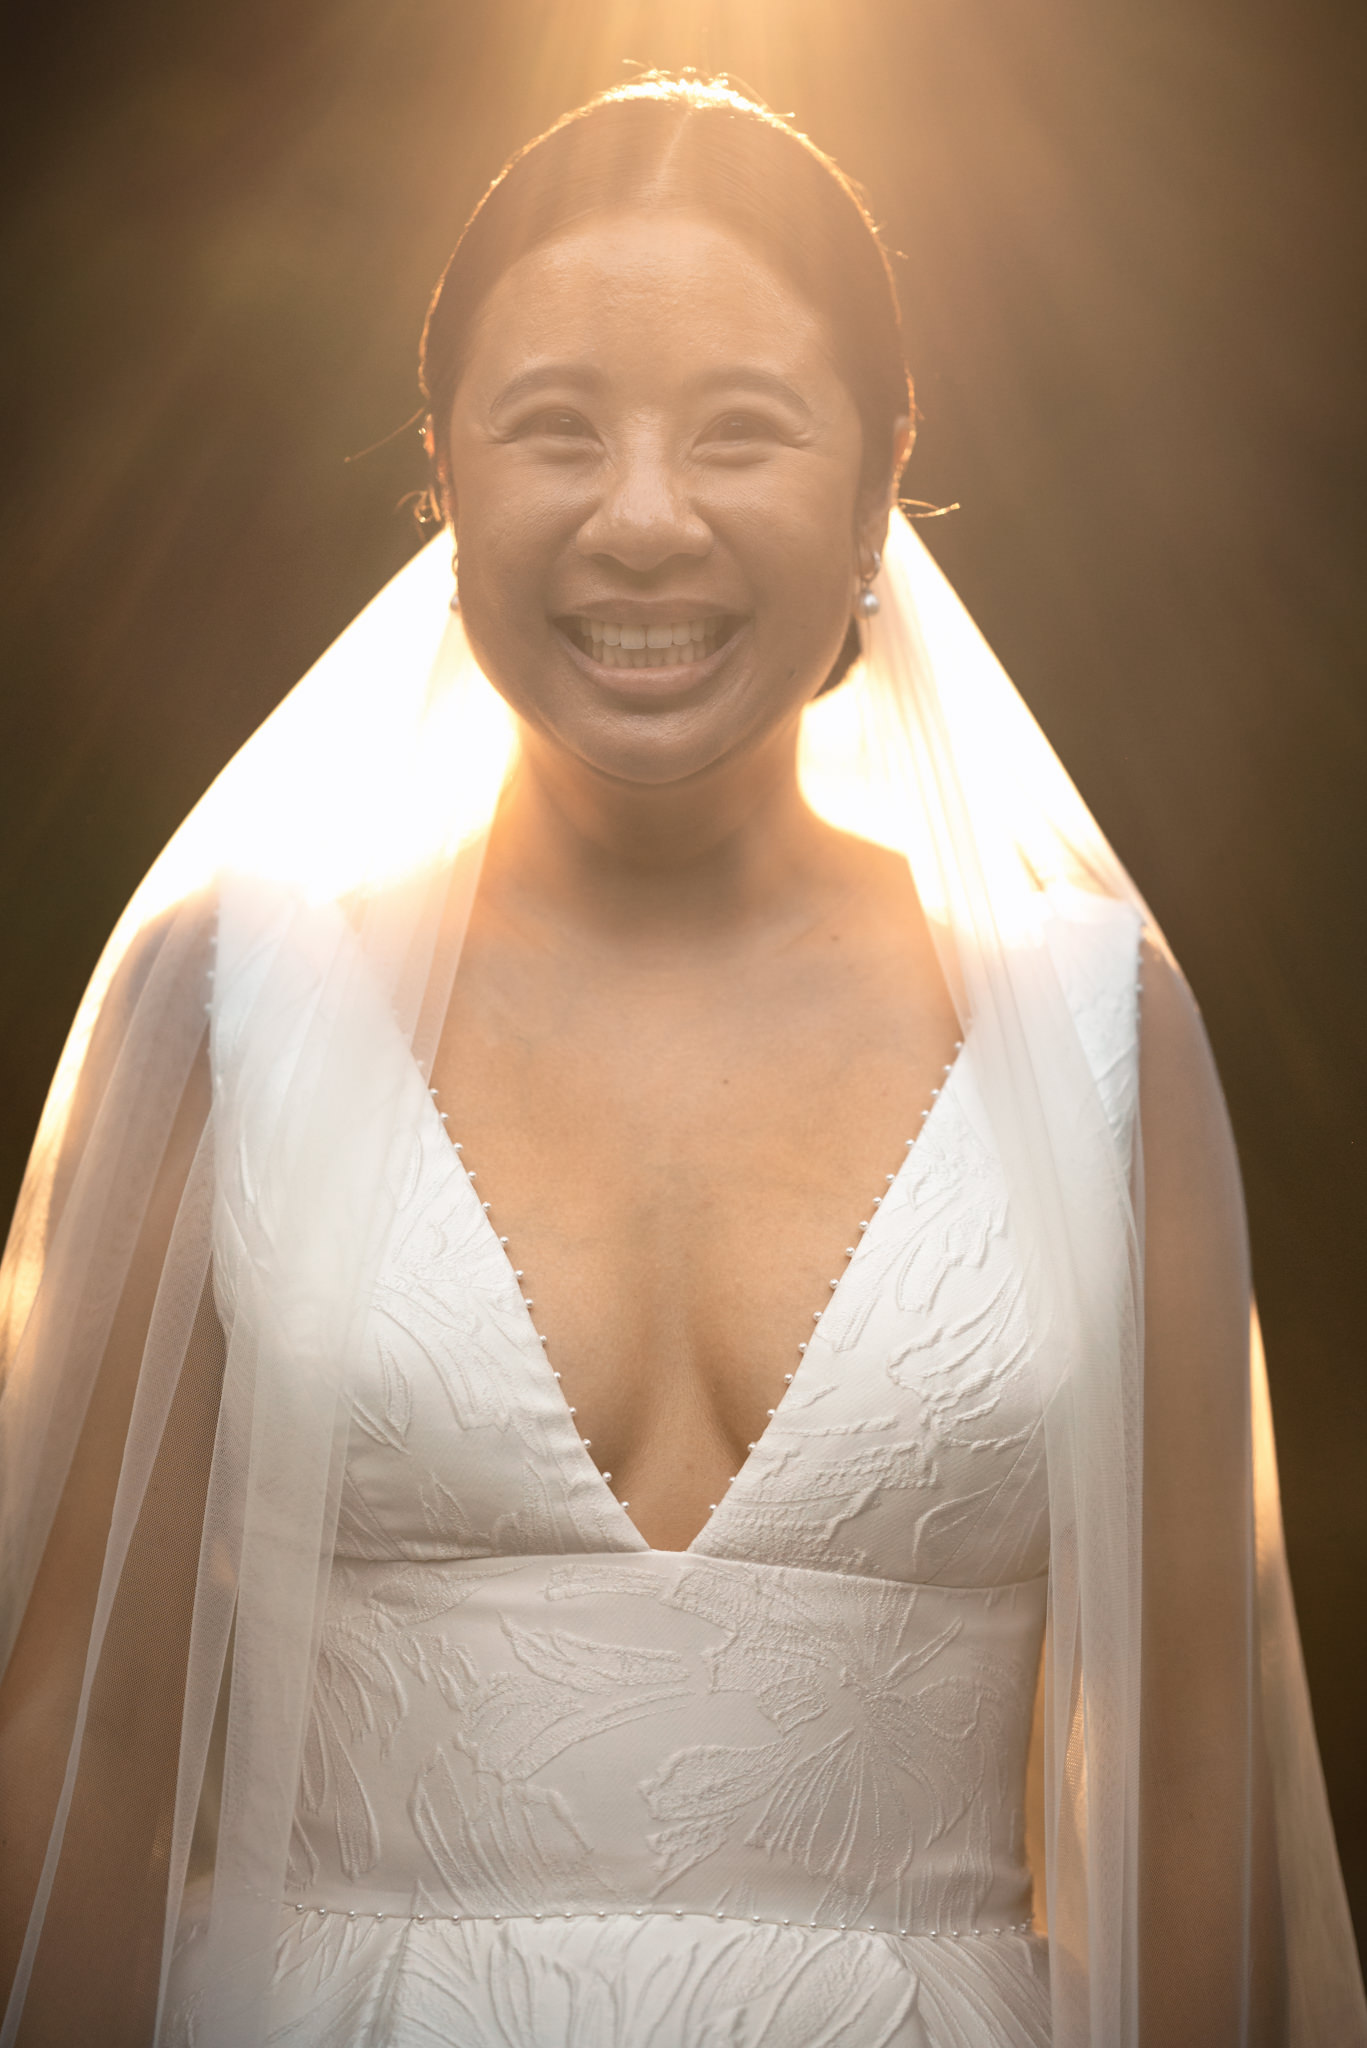 A bride smiles at her farm wedding as the sun shines through her veil.